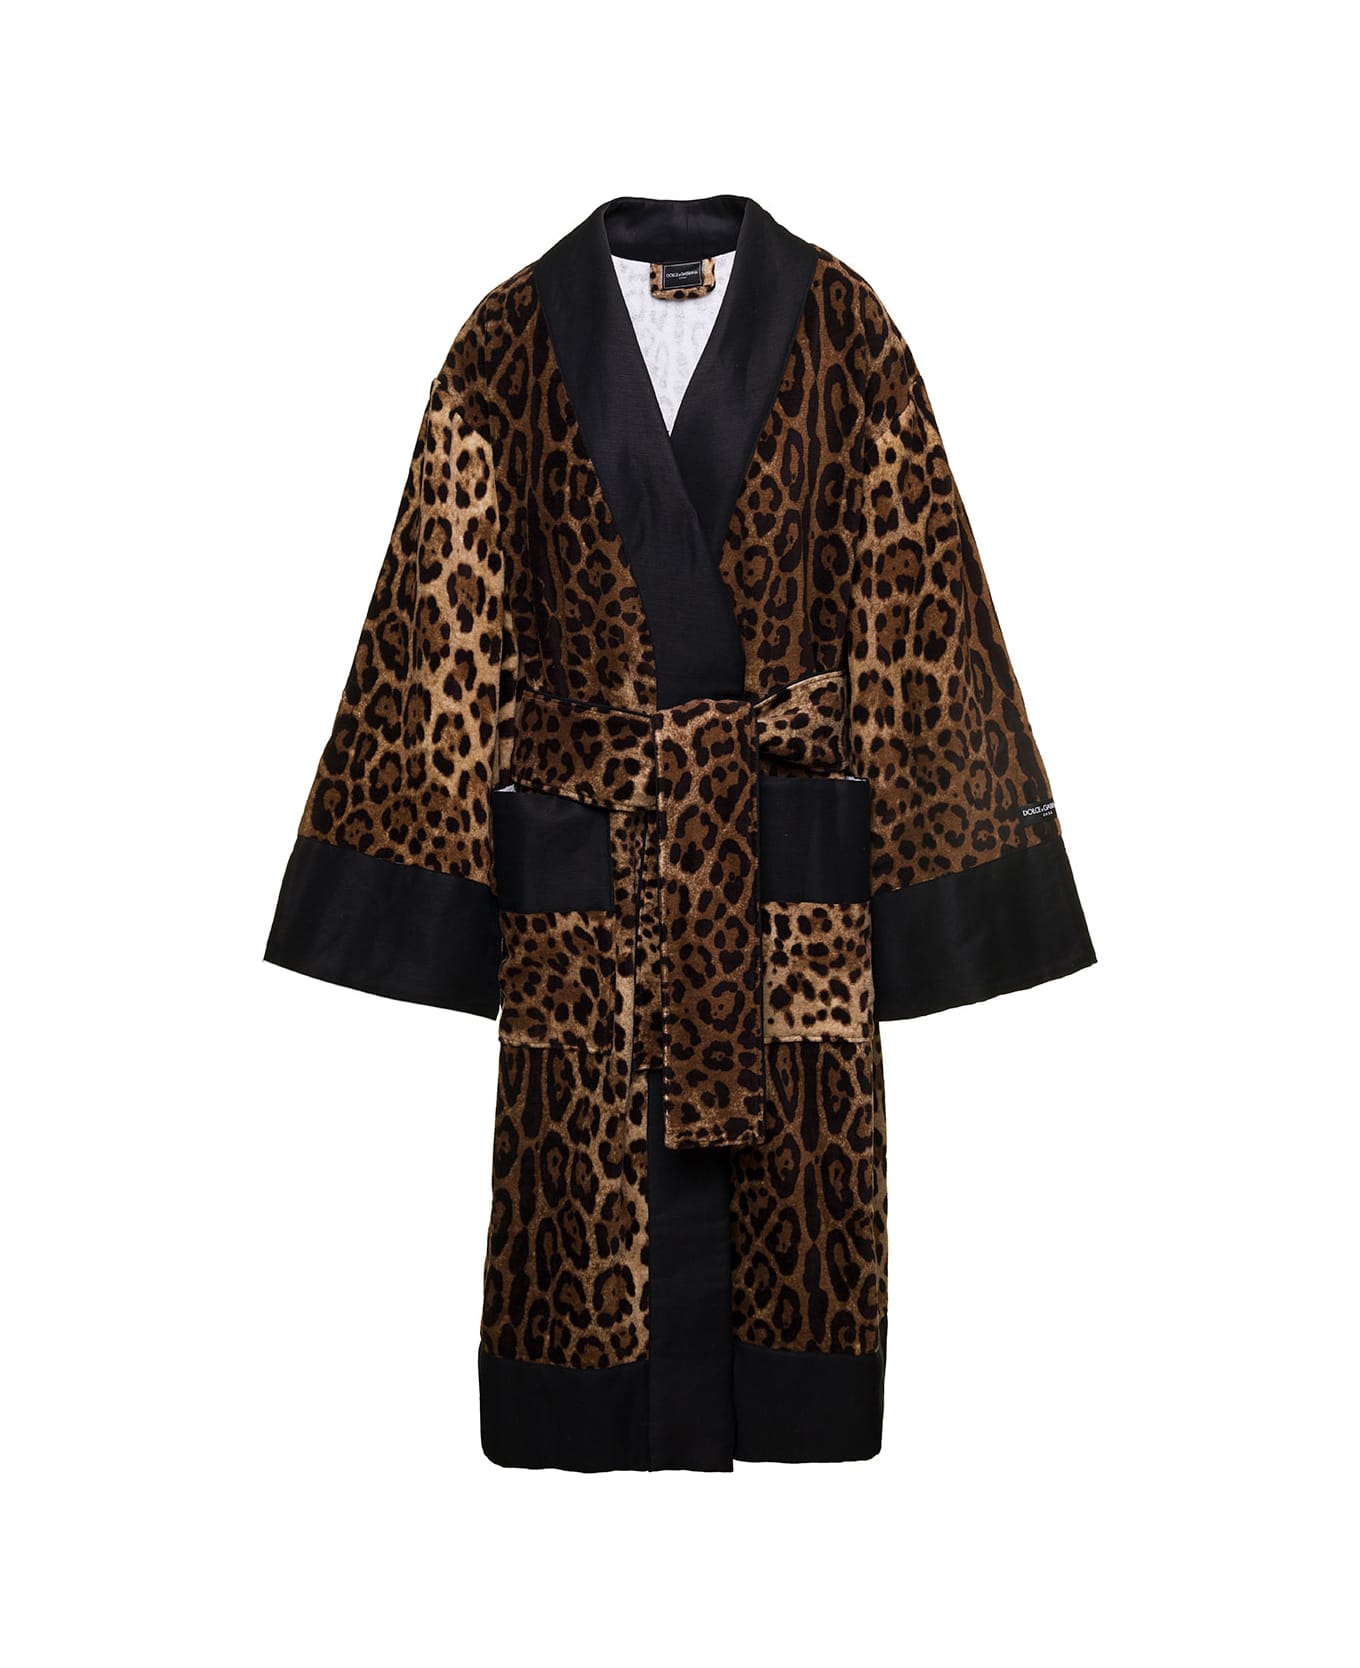 Dolce & Gabbana Multicolor Kimono Bathrobe With All-over Leopard Print In Cotton Dolce & Gabbana - Brown